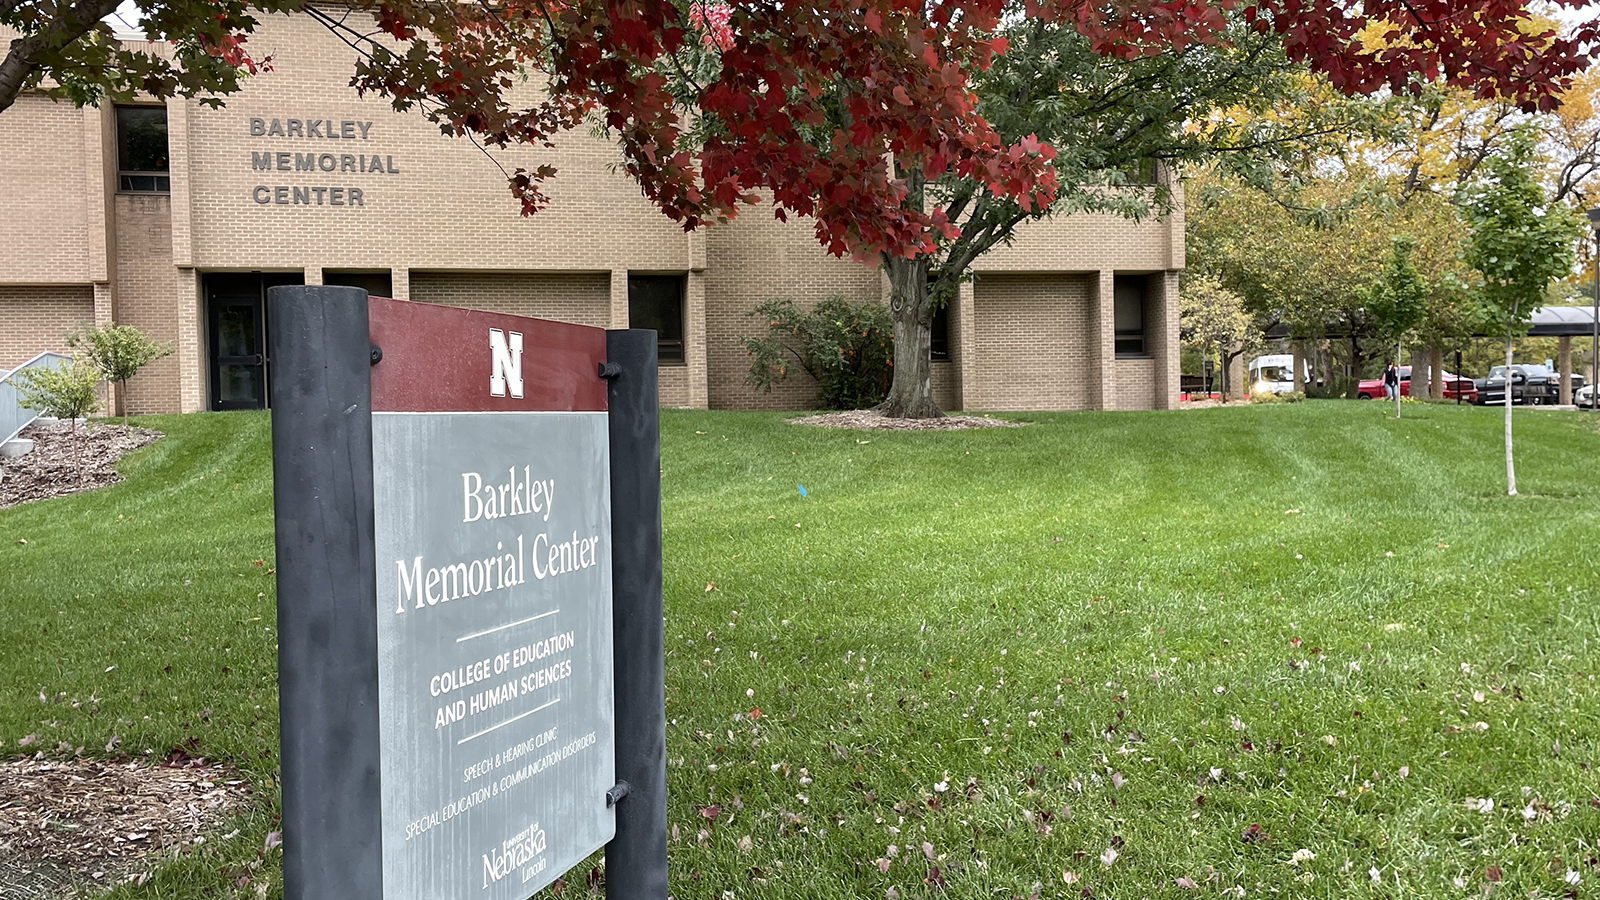 Barkley Memorial Center on the University of Nebraska-Lincoln's East Campus